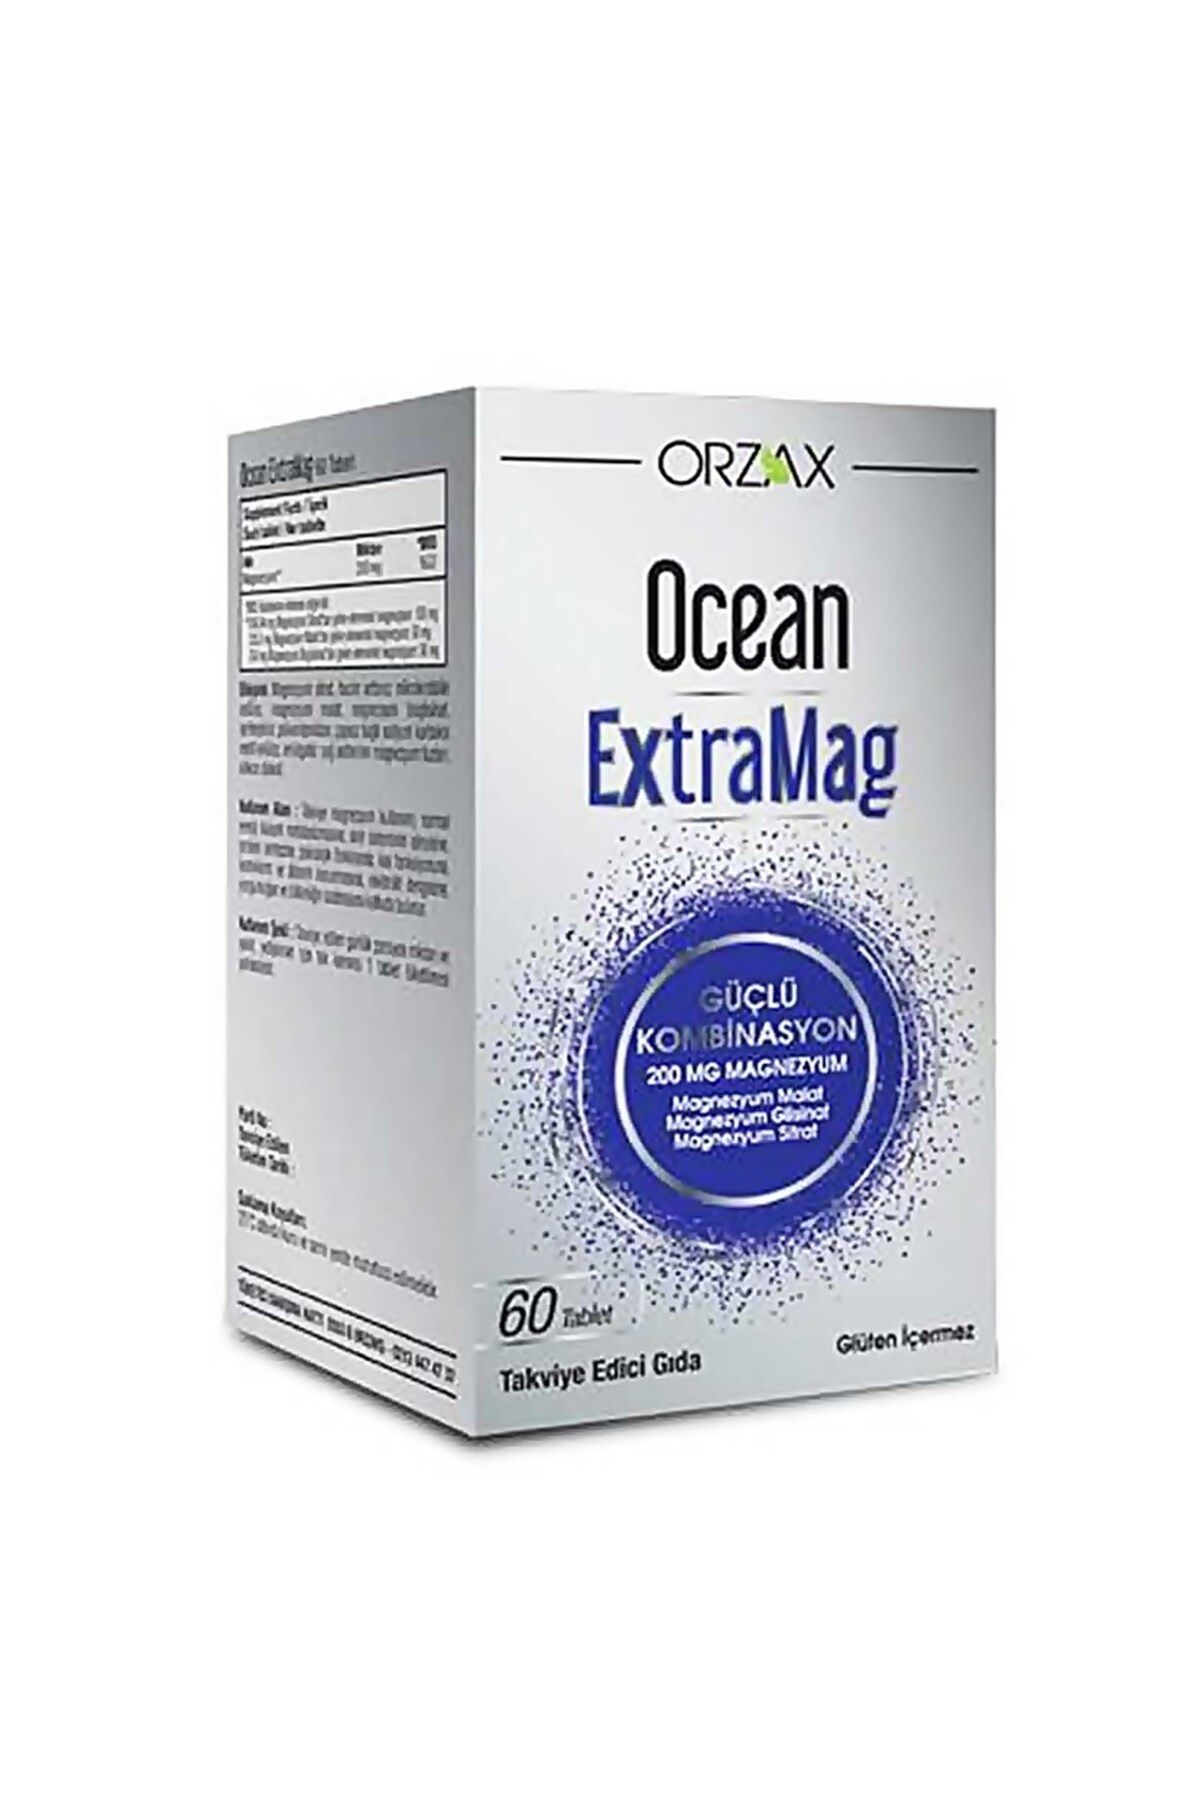 Orzax Ocean ExtraMag Üçlü Kombinasyon Takviye Edici Gıda 60 Tablet